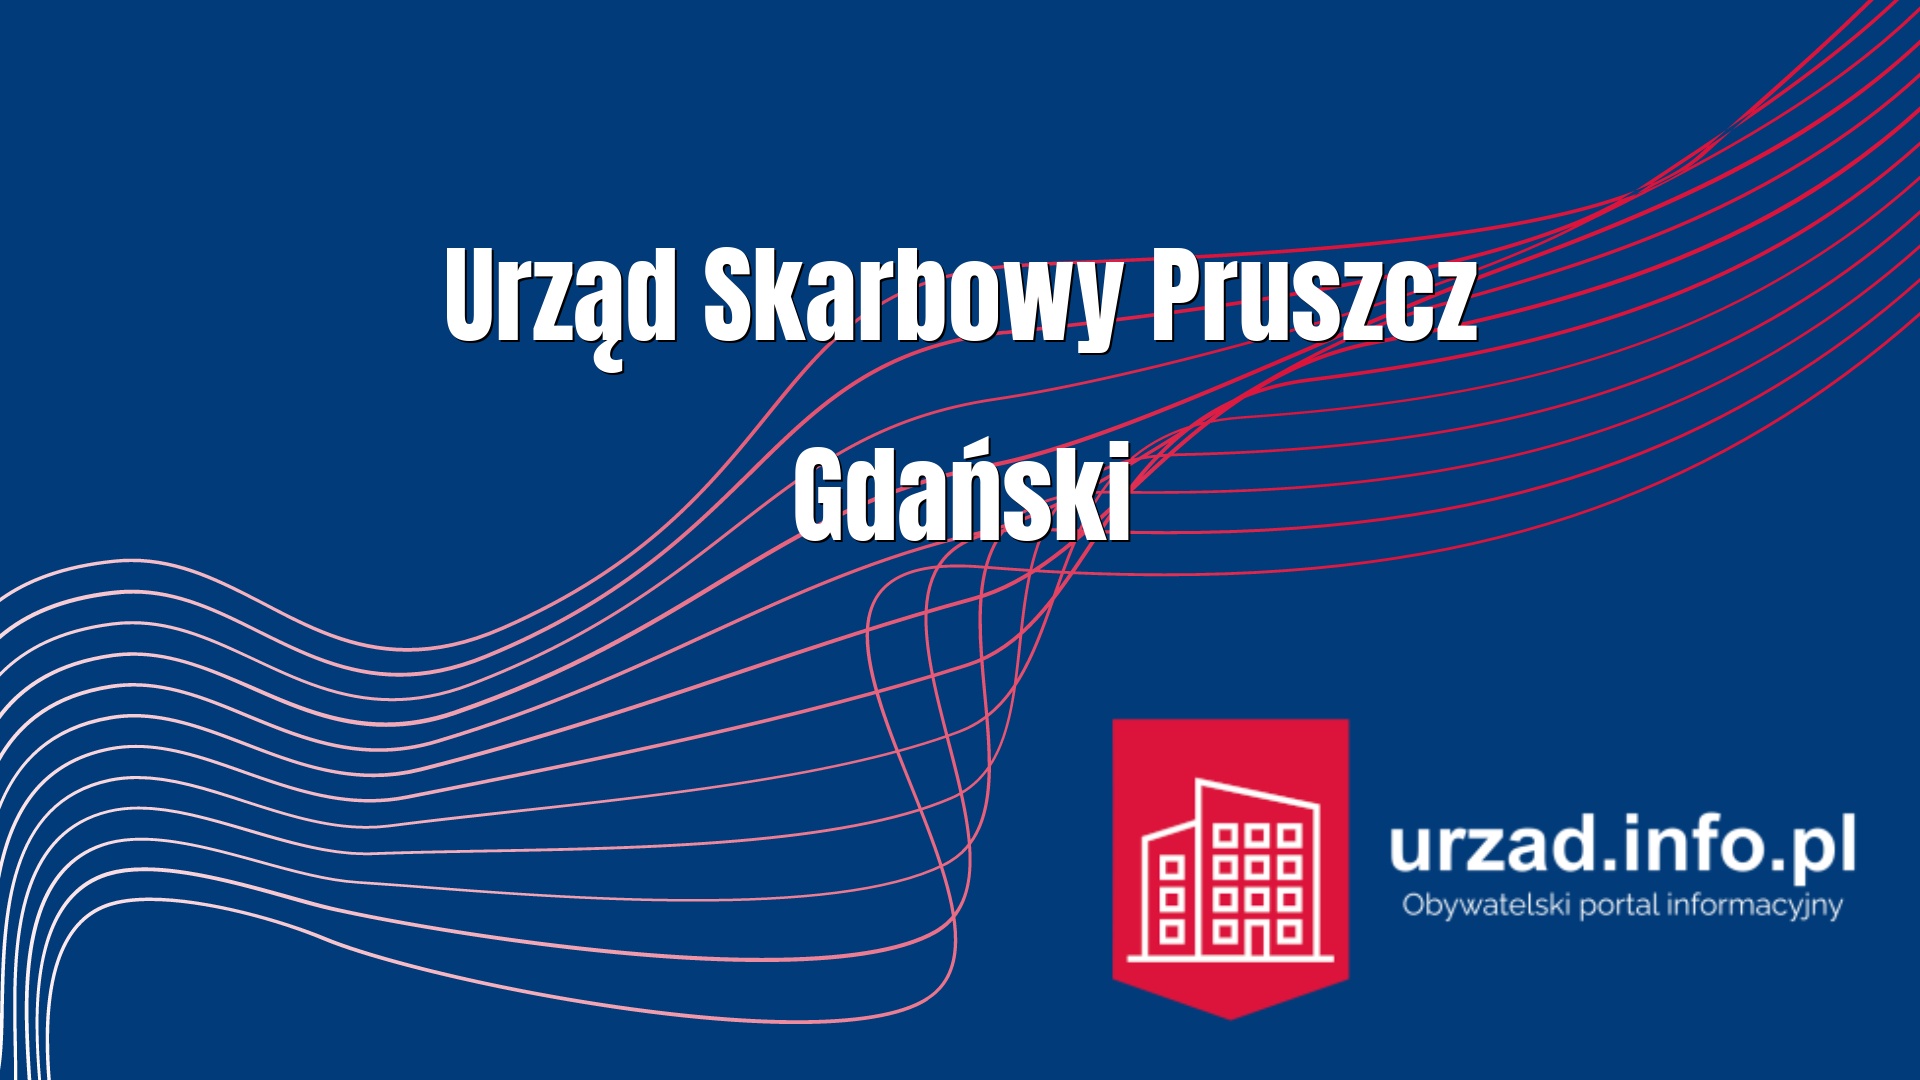 Urząd Skarbowy Pruszcz Gdański